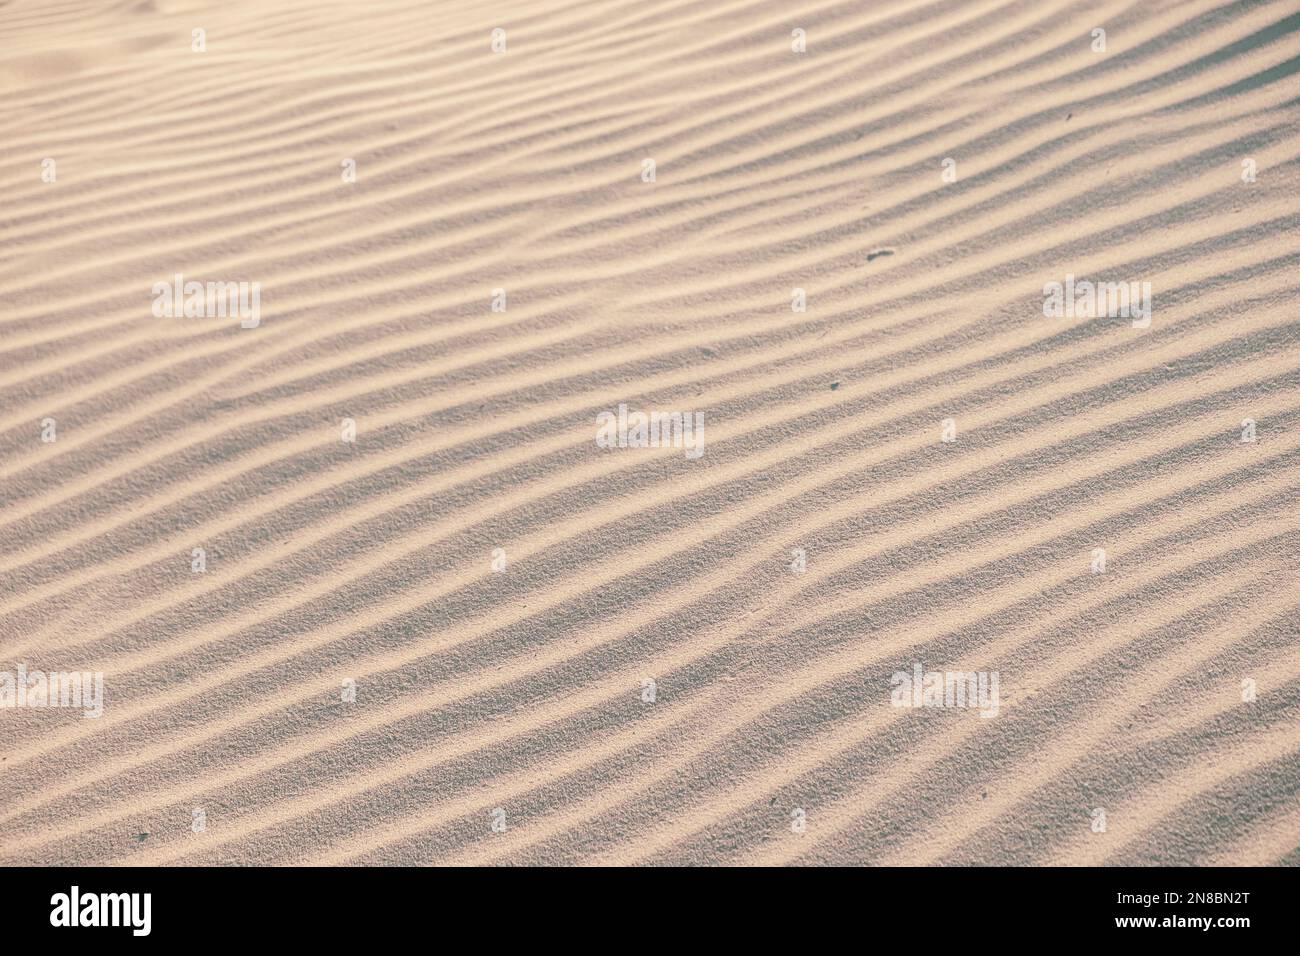 Fondo naturale di arenaria texture. sabbia sulla spiaggia come sfondo. Sfondo di sabbia ondulata per disegni estivi. Foto Stock